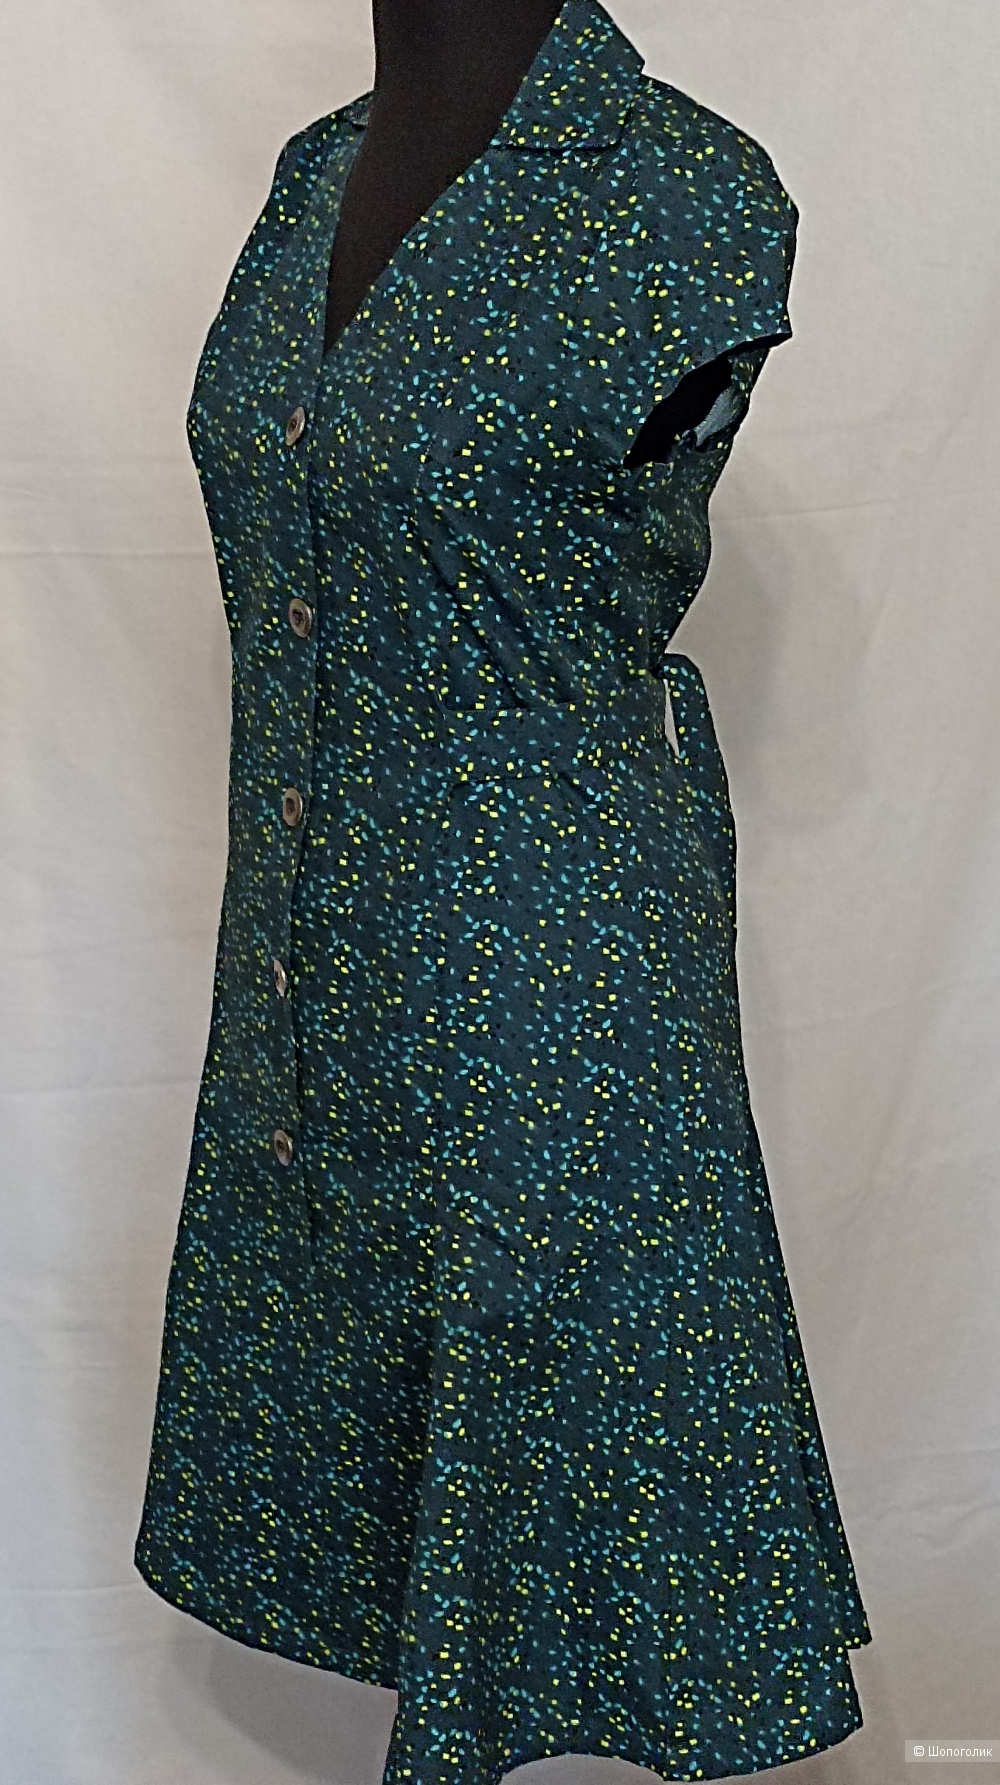 Платье zergatik RU 40-42